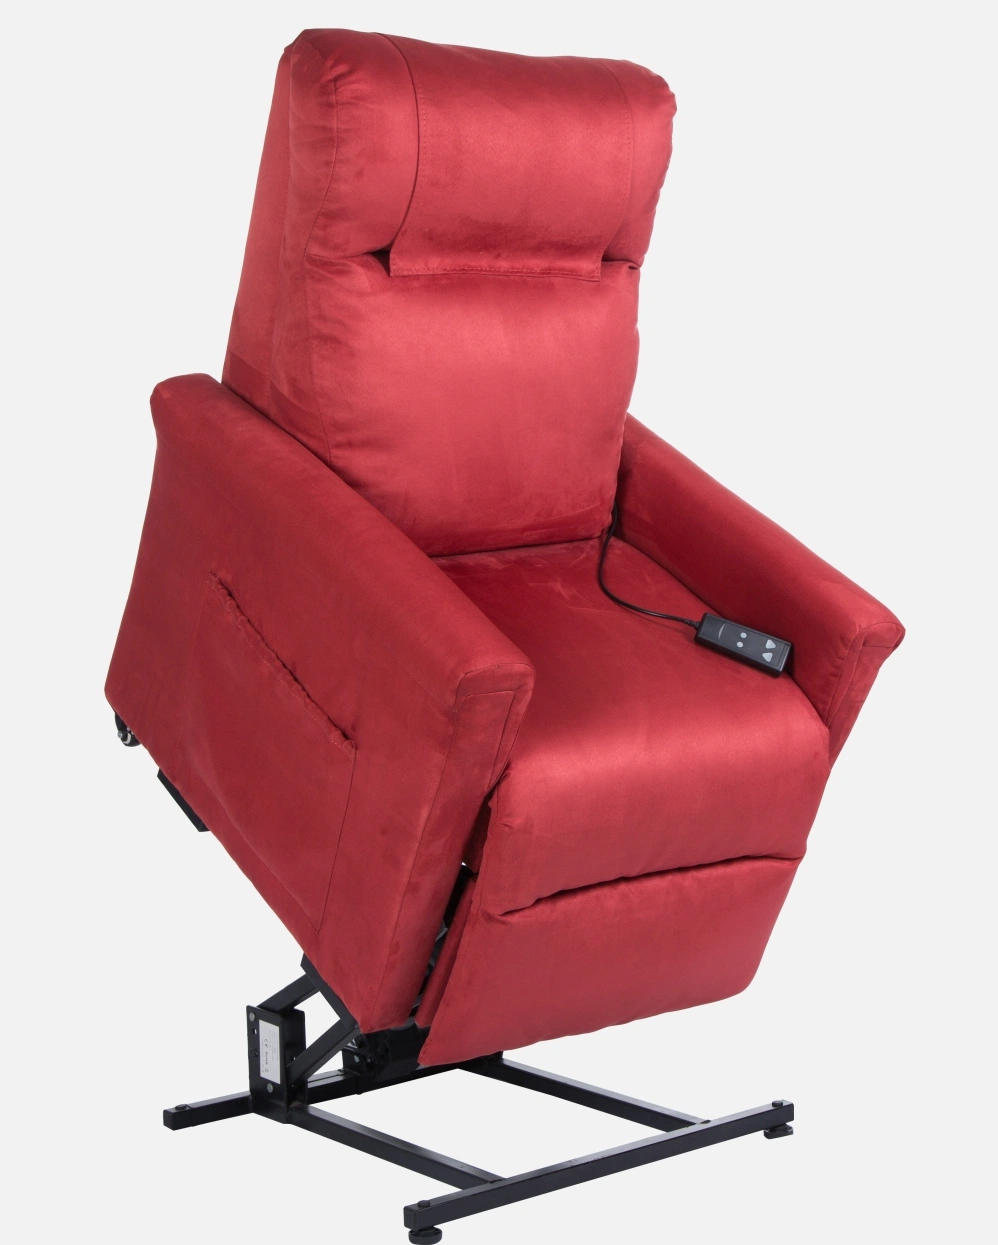 Медицинская мебель Производители регулируемый диван Maxicomforter Power Lift Recliner кресло Для пожилых людей с массажем